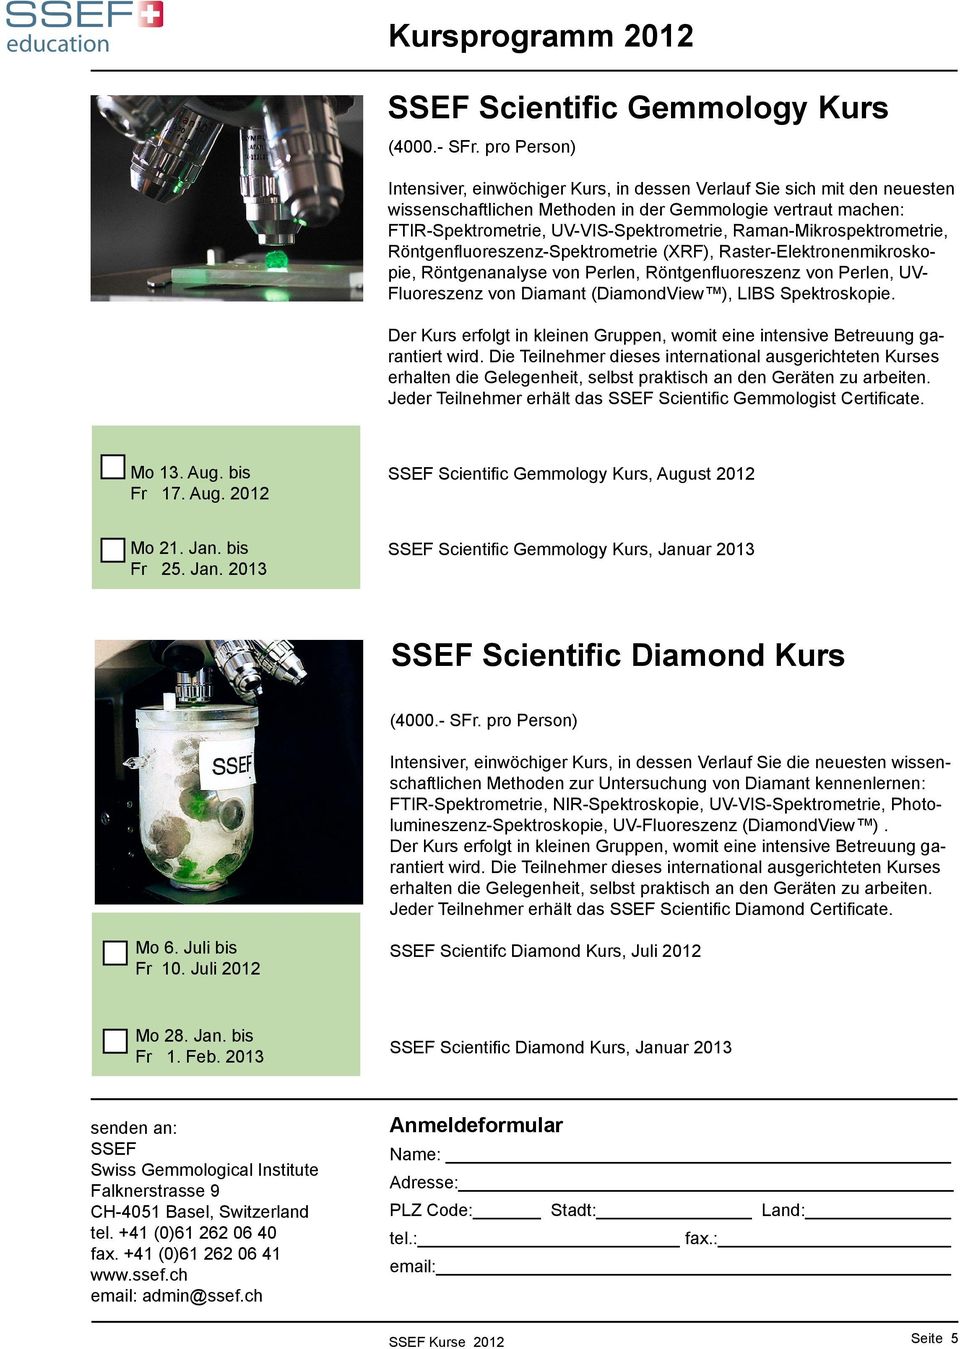 Raman-Mikrospektrometrie, Röntgenfluoreszenz-Spektrometrie (XRF), Raster-Elektronenmikroskopie, Röntgenanalyse von Perlen, Röntgenfluoreszenz von Perlen, UV- Fluoreszenz von Diamant (DiamondView ),